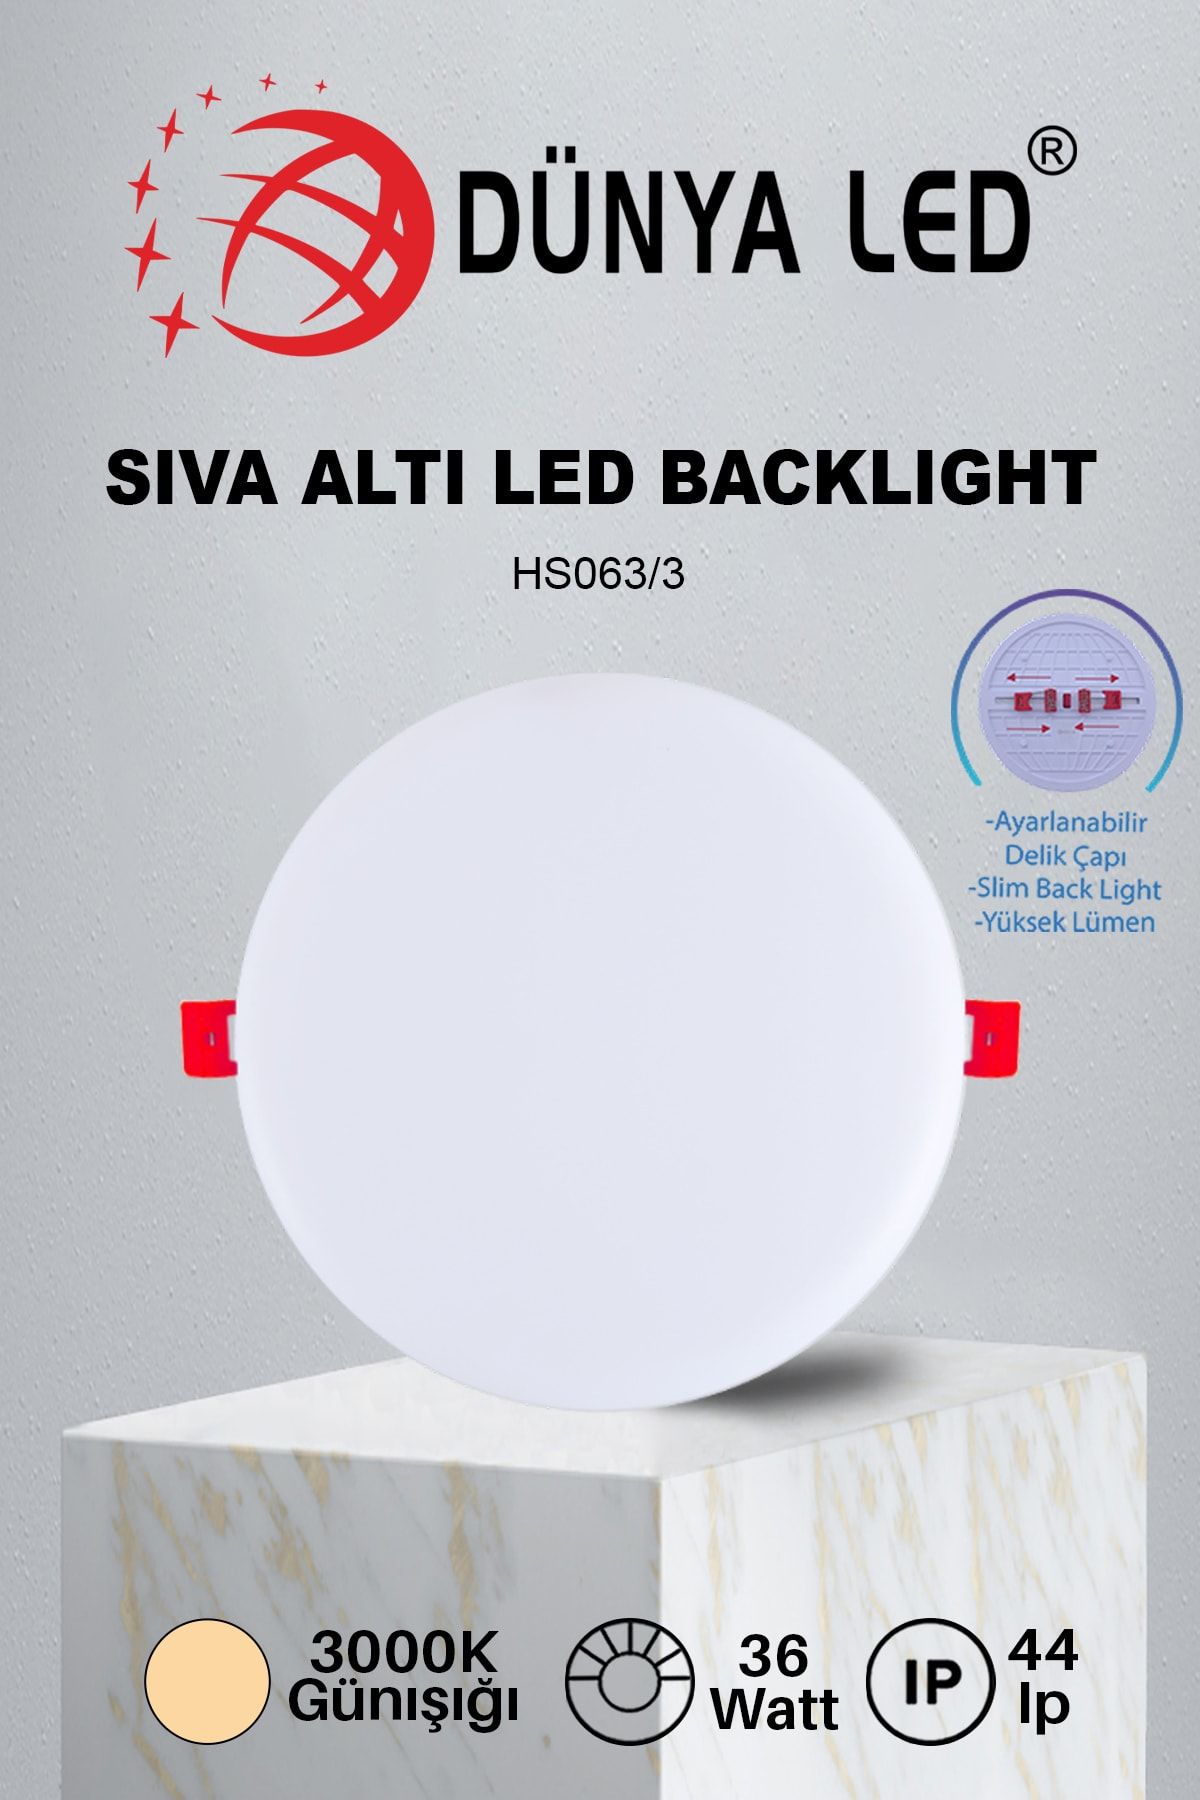 DÜNYA LED Hs.063/3 36w Delik Çapı Ayarlanabilir Sıva Altı Backlıght Panel Spot Lamba 3000k Günışığı